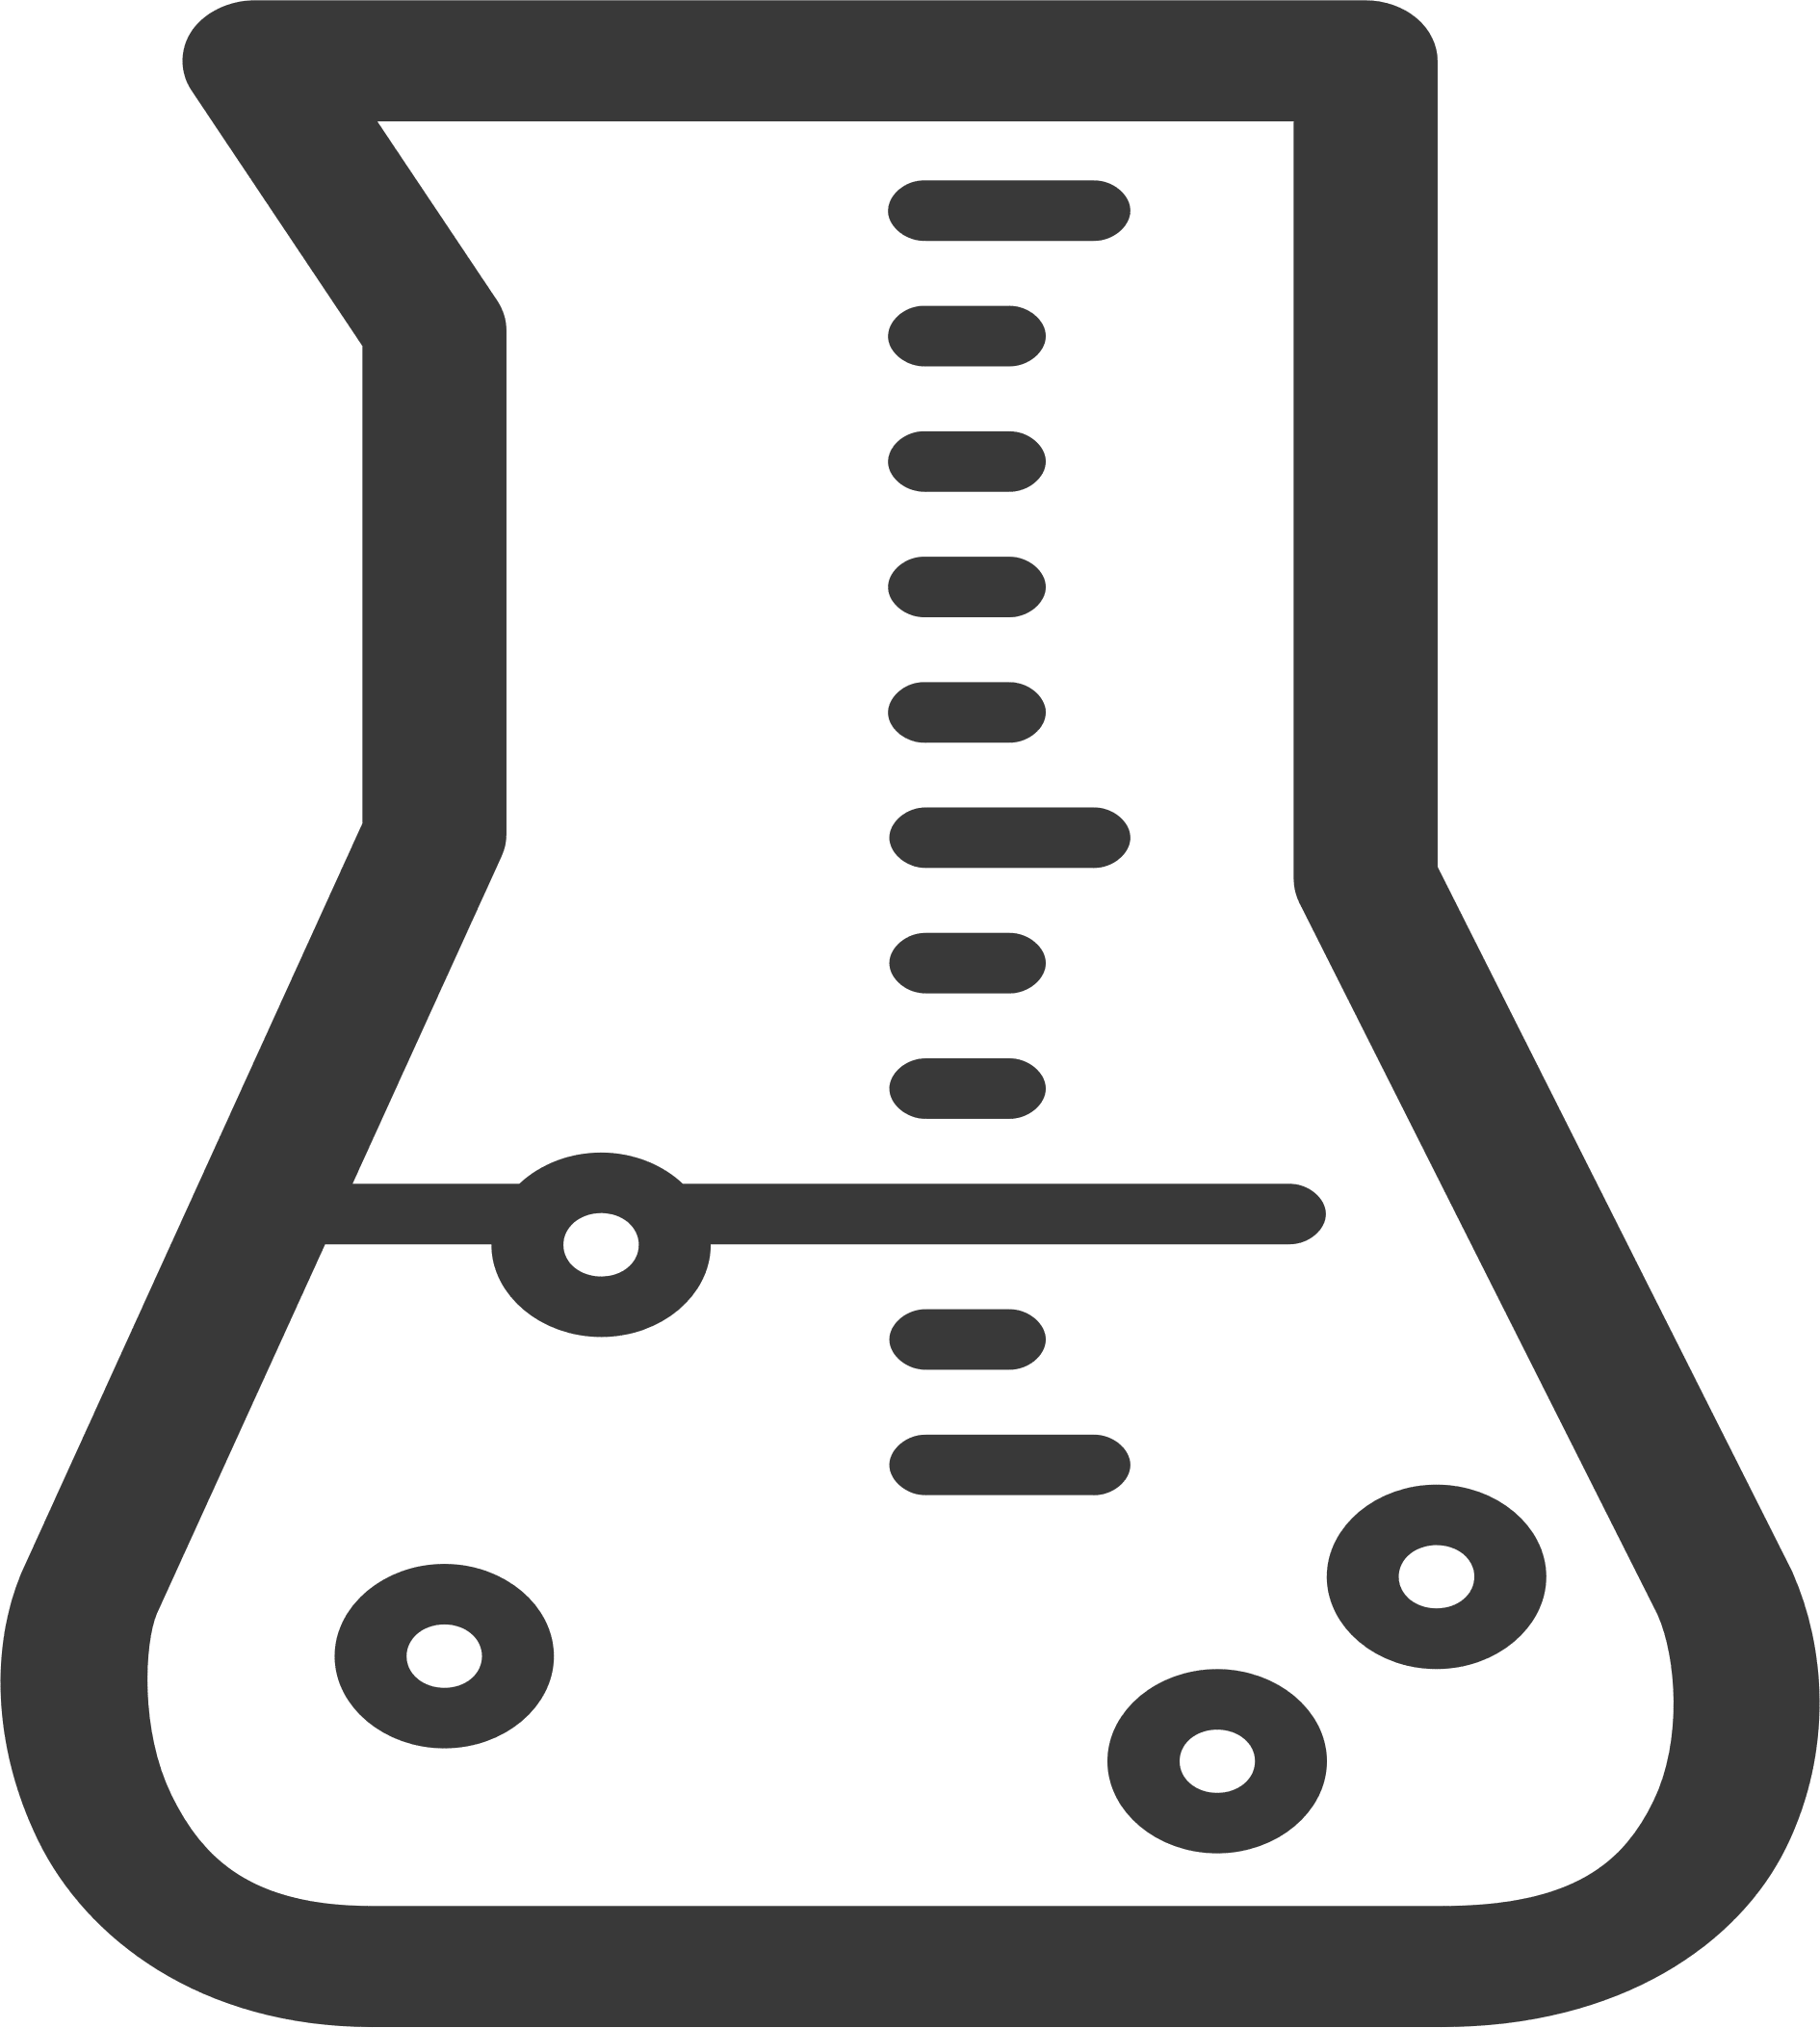 beaker chemistry